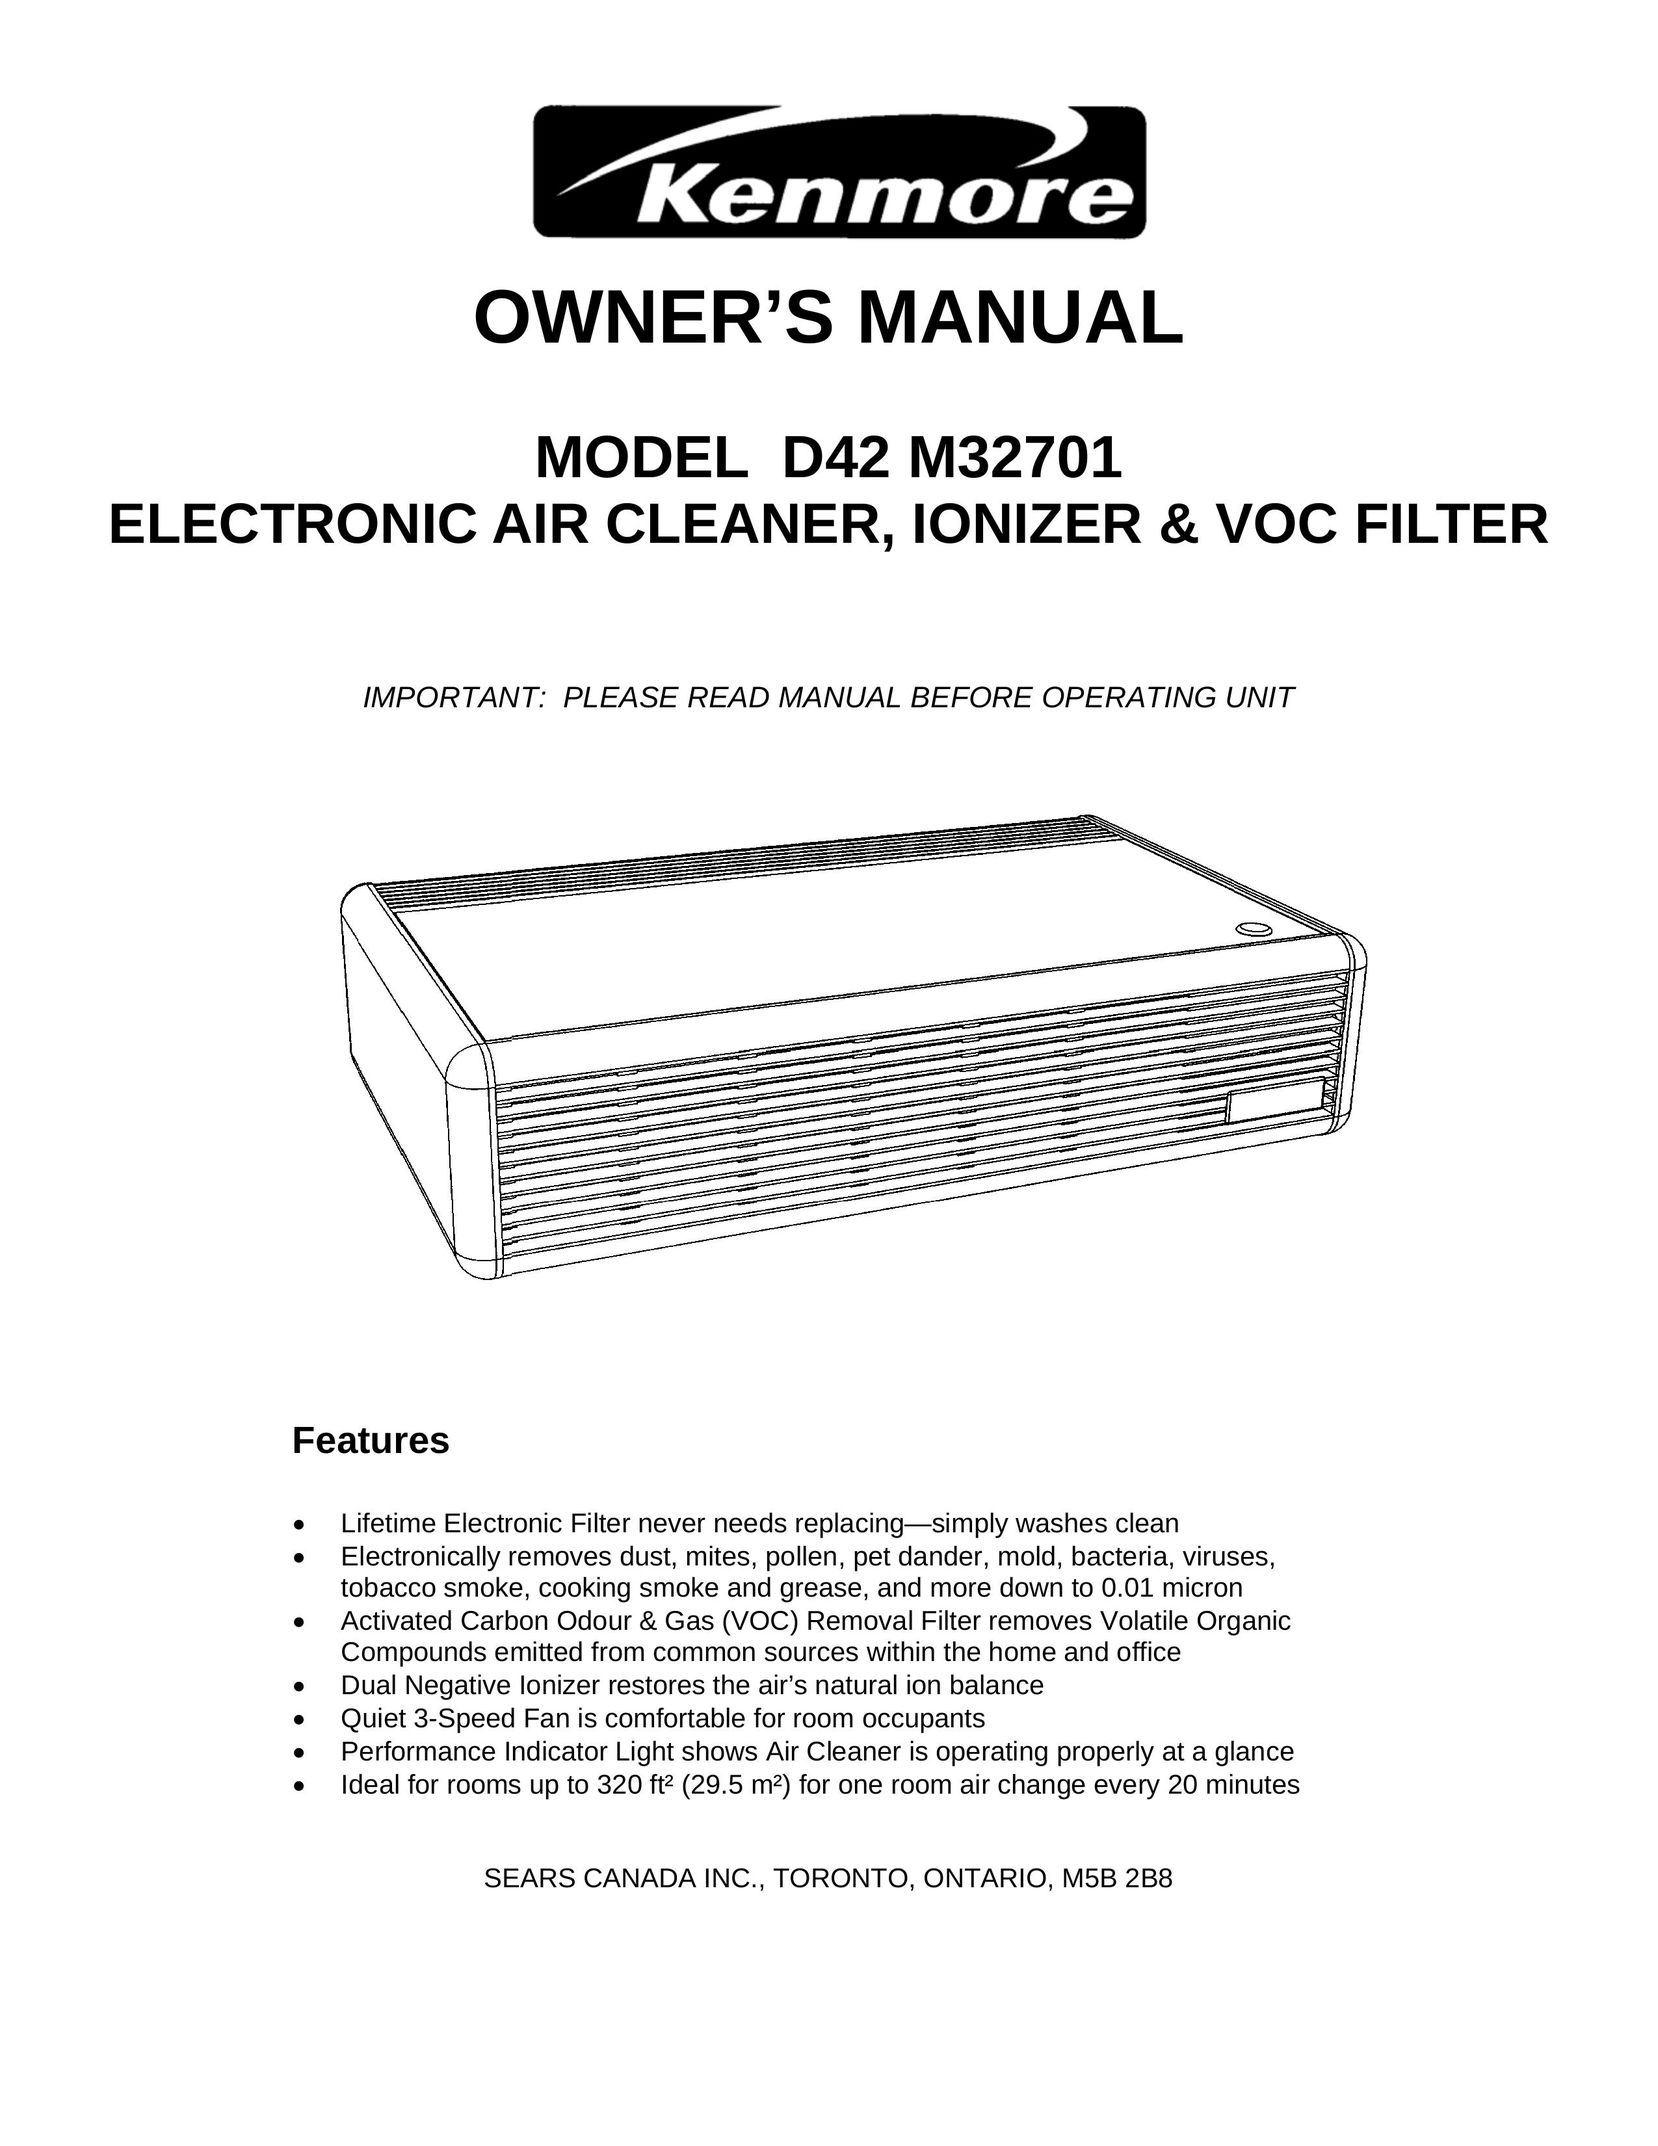 Kenmore D42 M32701 Air Cleaner User Manual